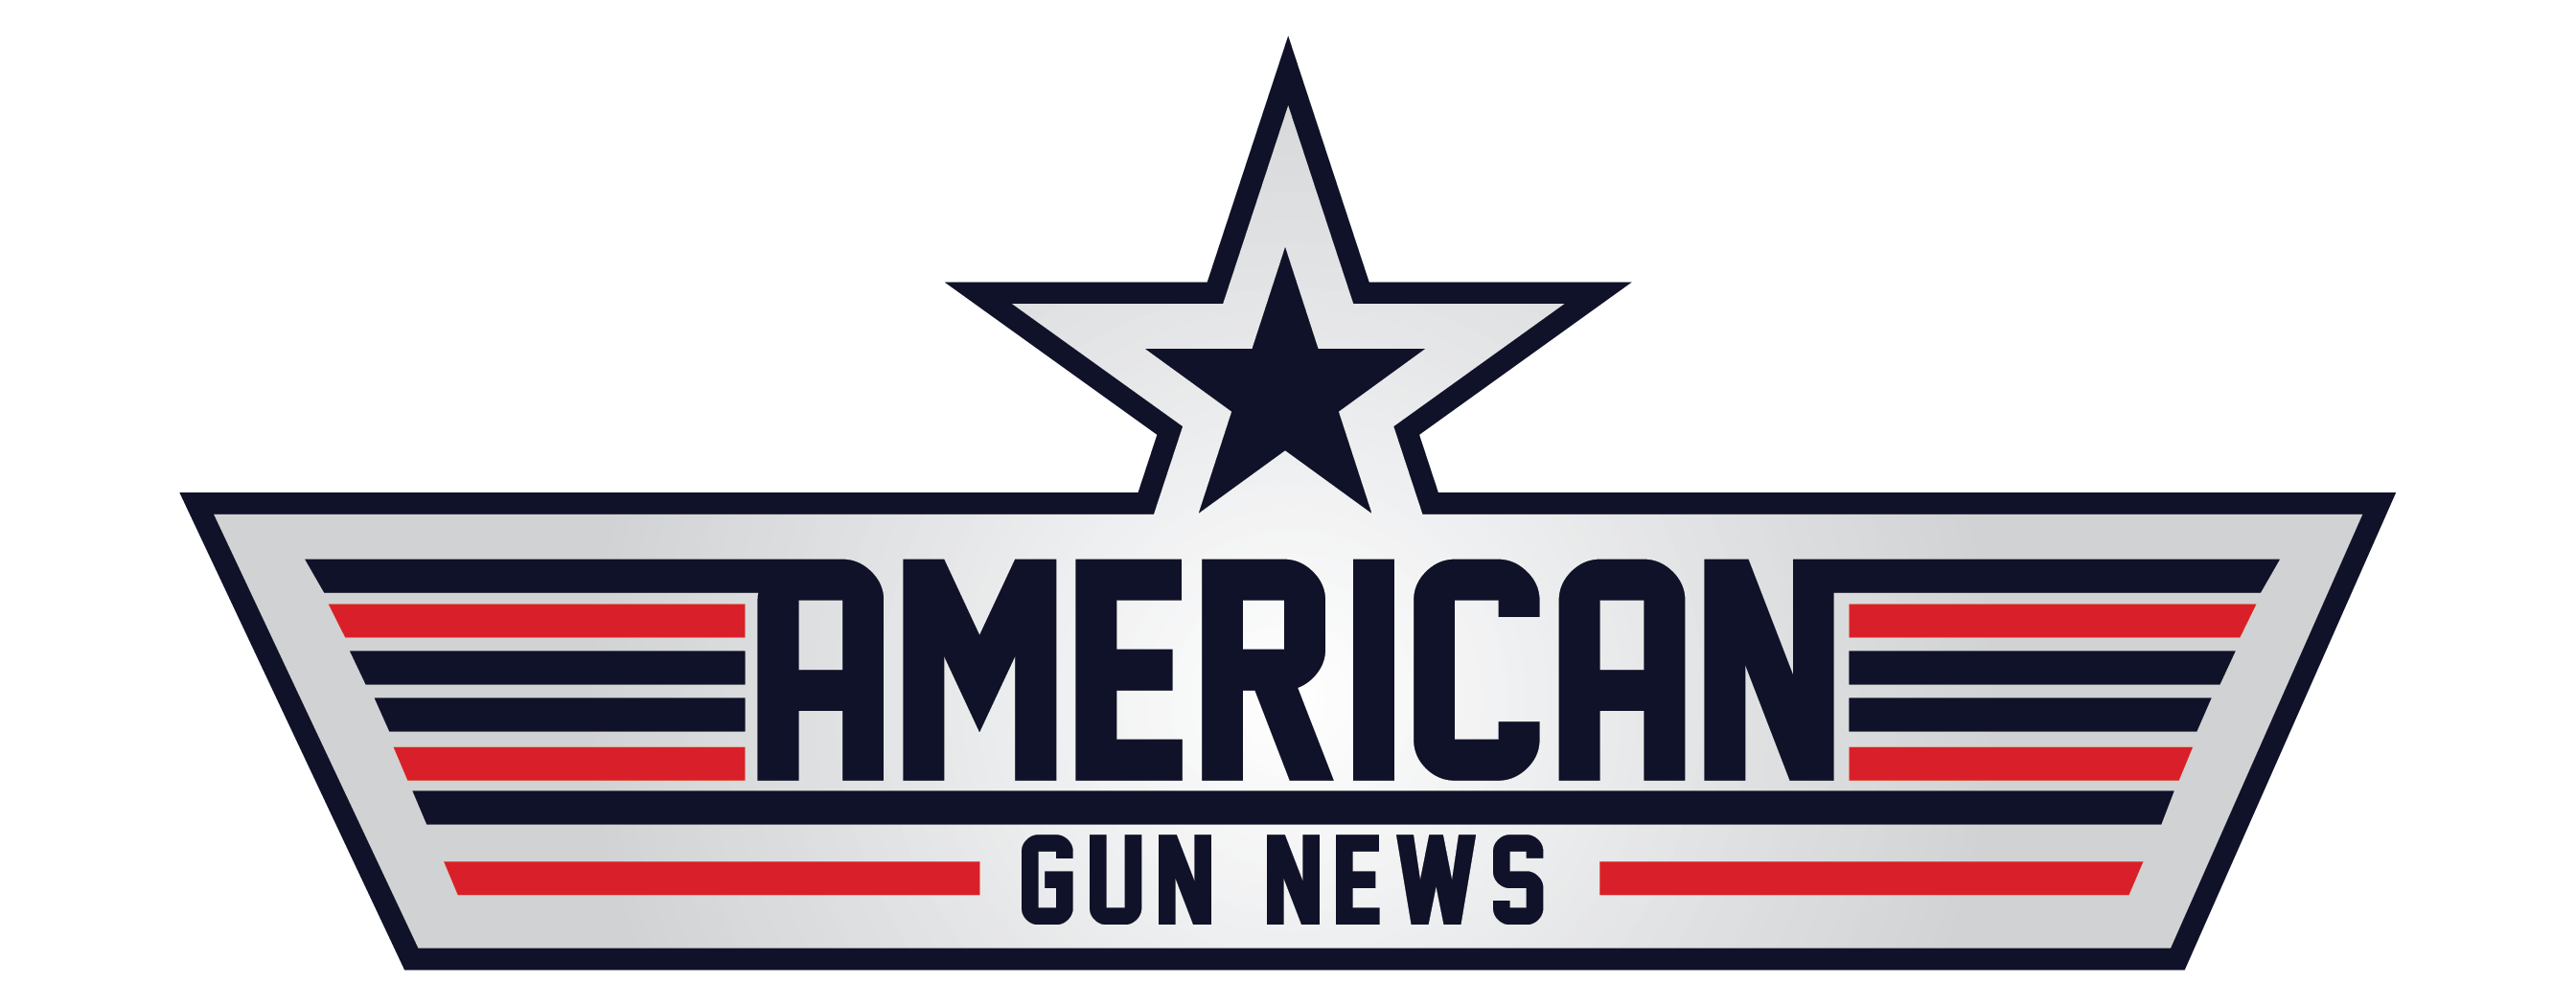 American gun news